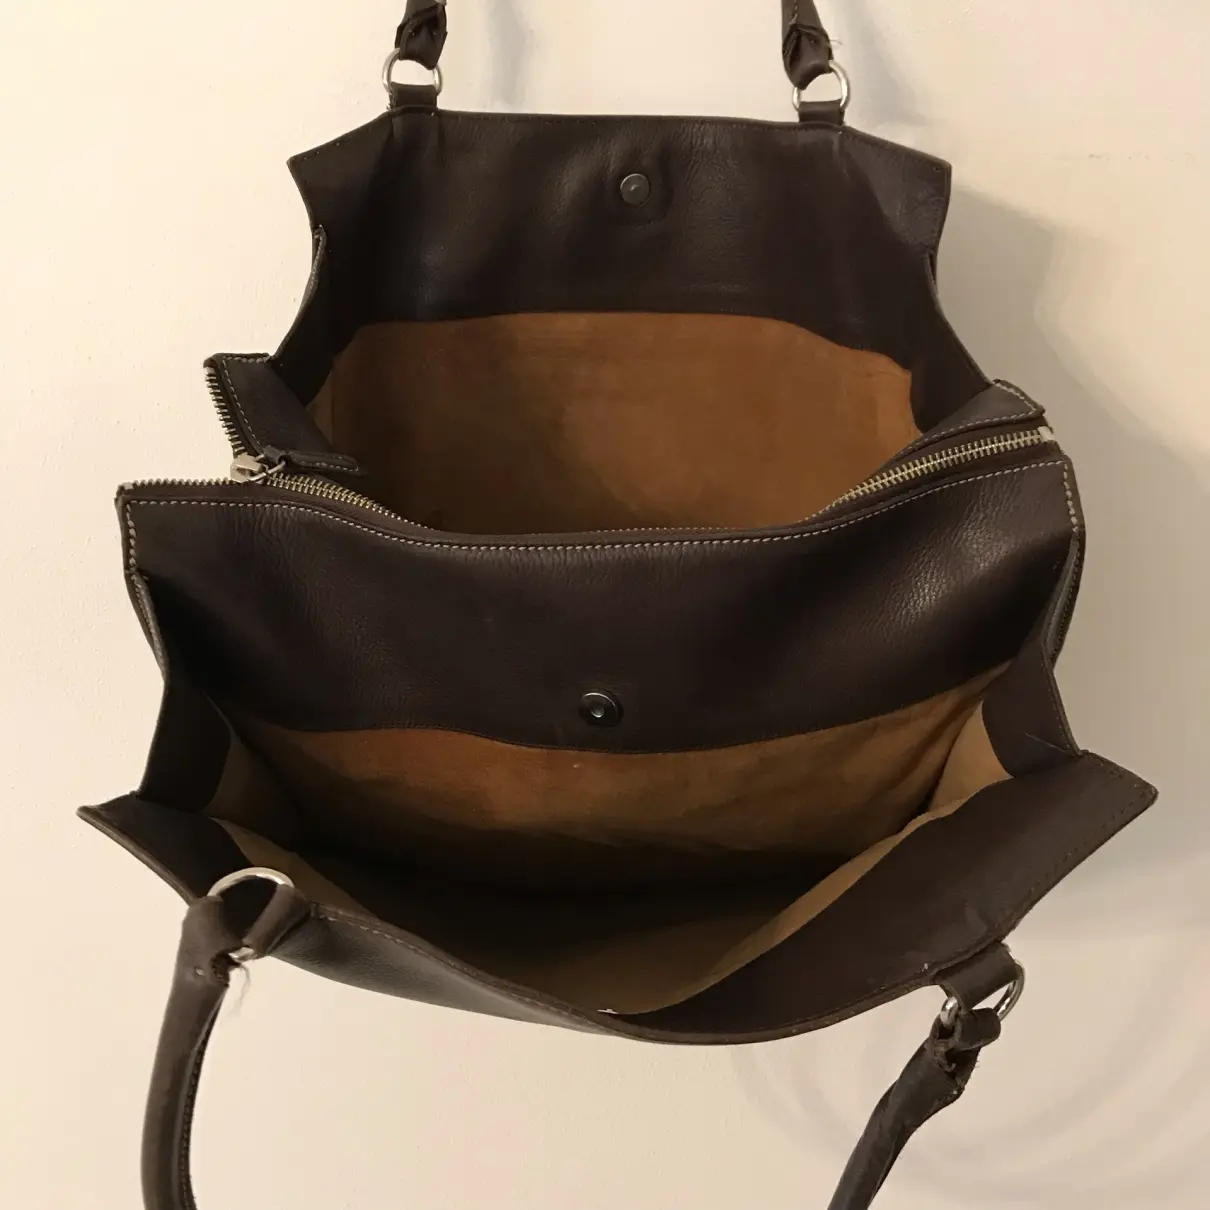 Leather handbag Mauro Governa